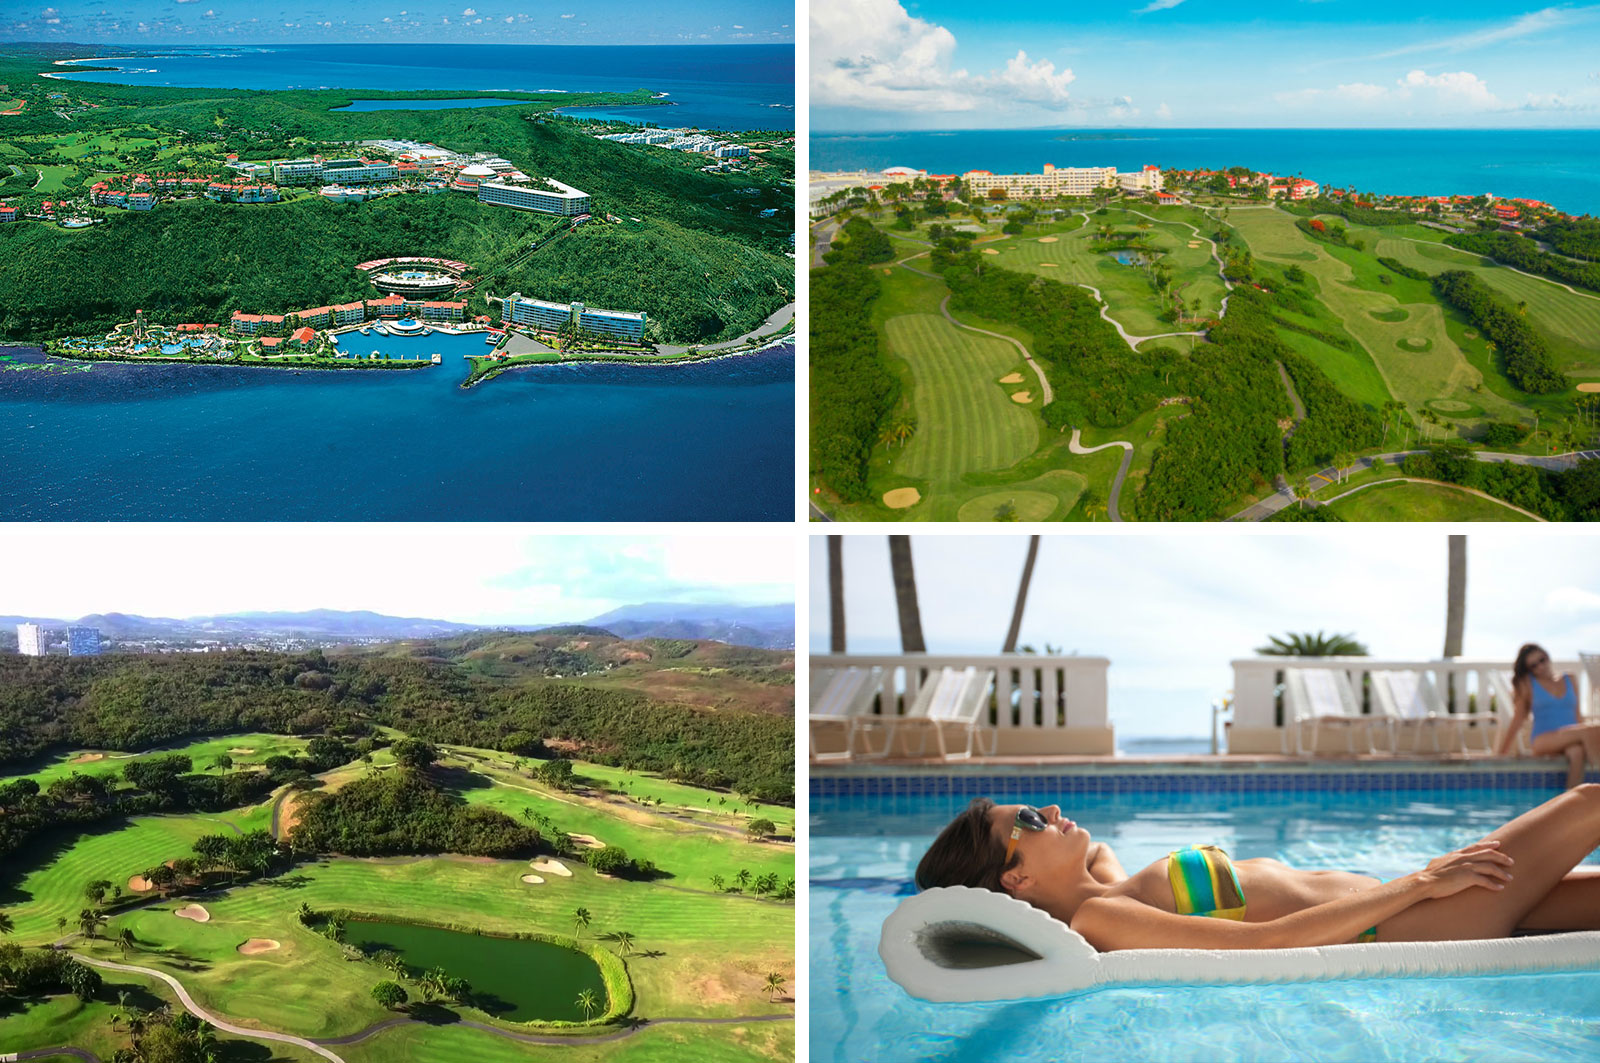 Puerto Rico Looking to Become Next Major Golf Destination El Conquistador Resort